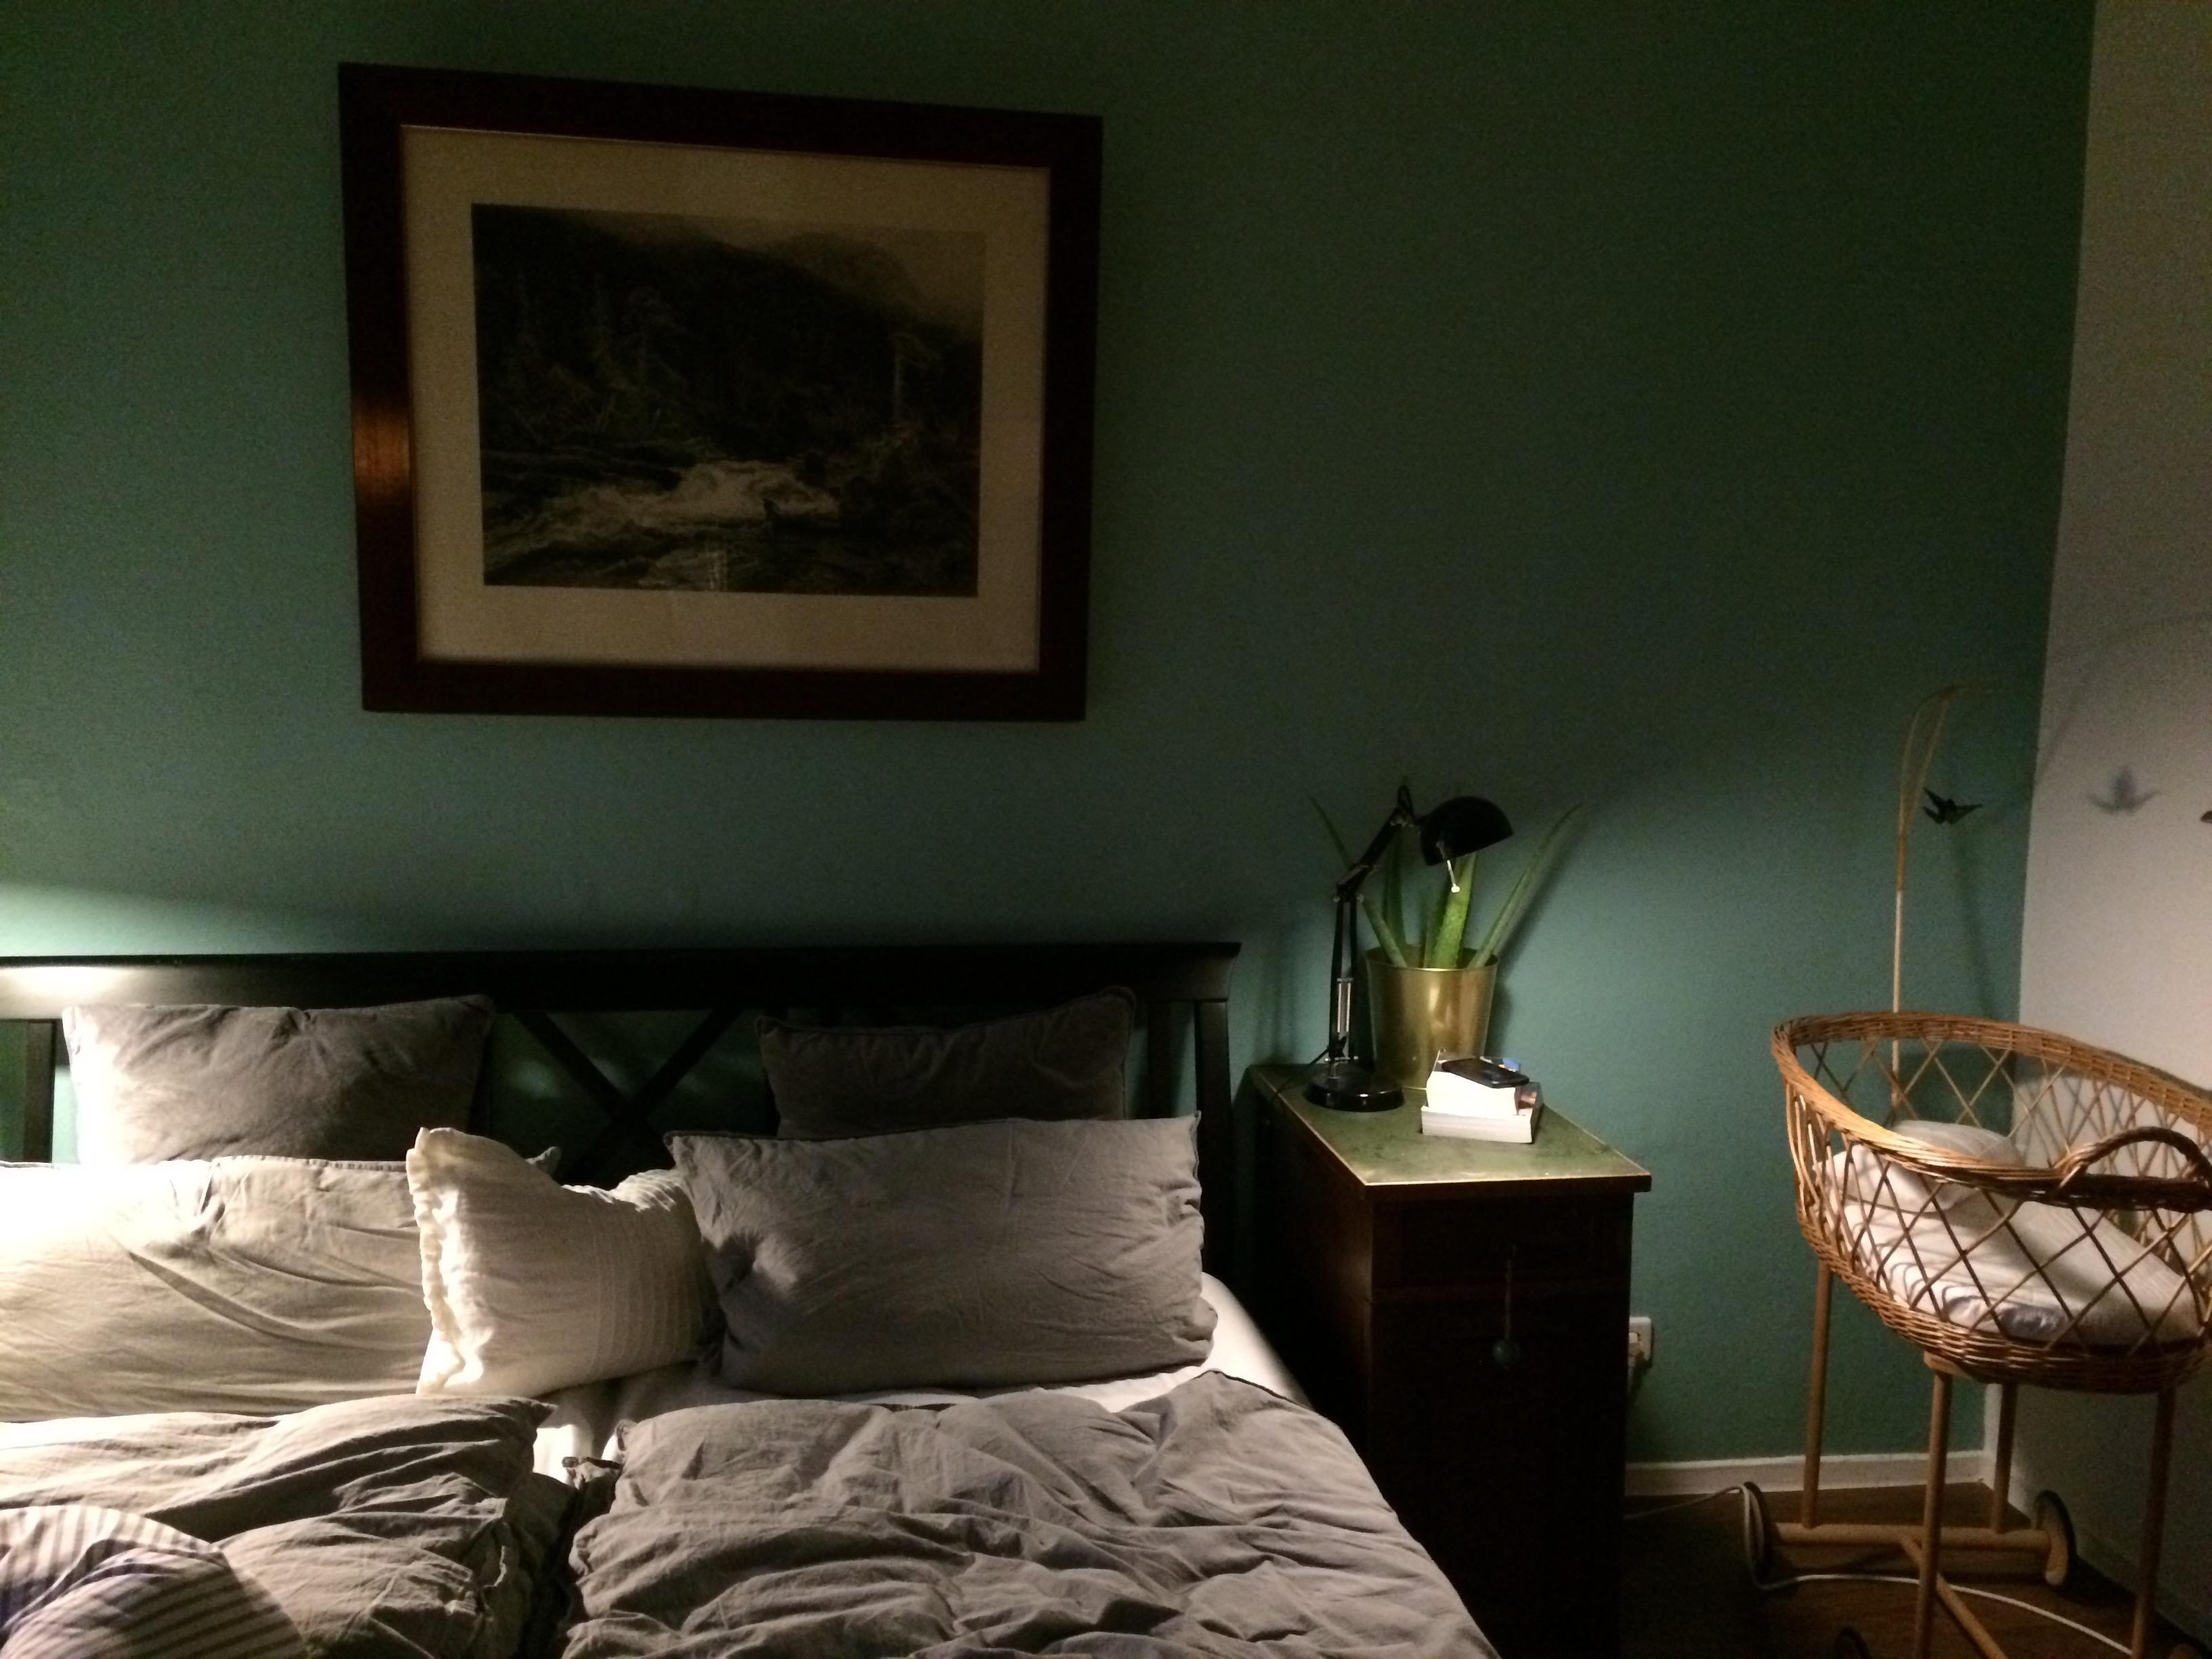 Das Schlafzimmer mit viel dunklem Holz, Goldelementen und natürlichen Grün